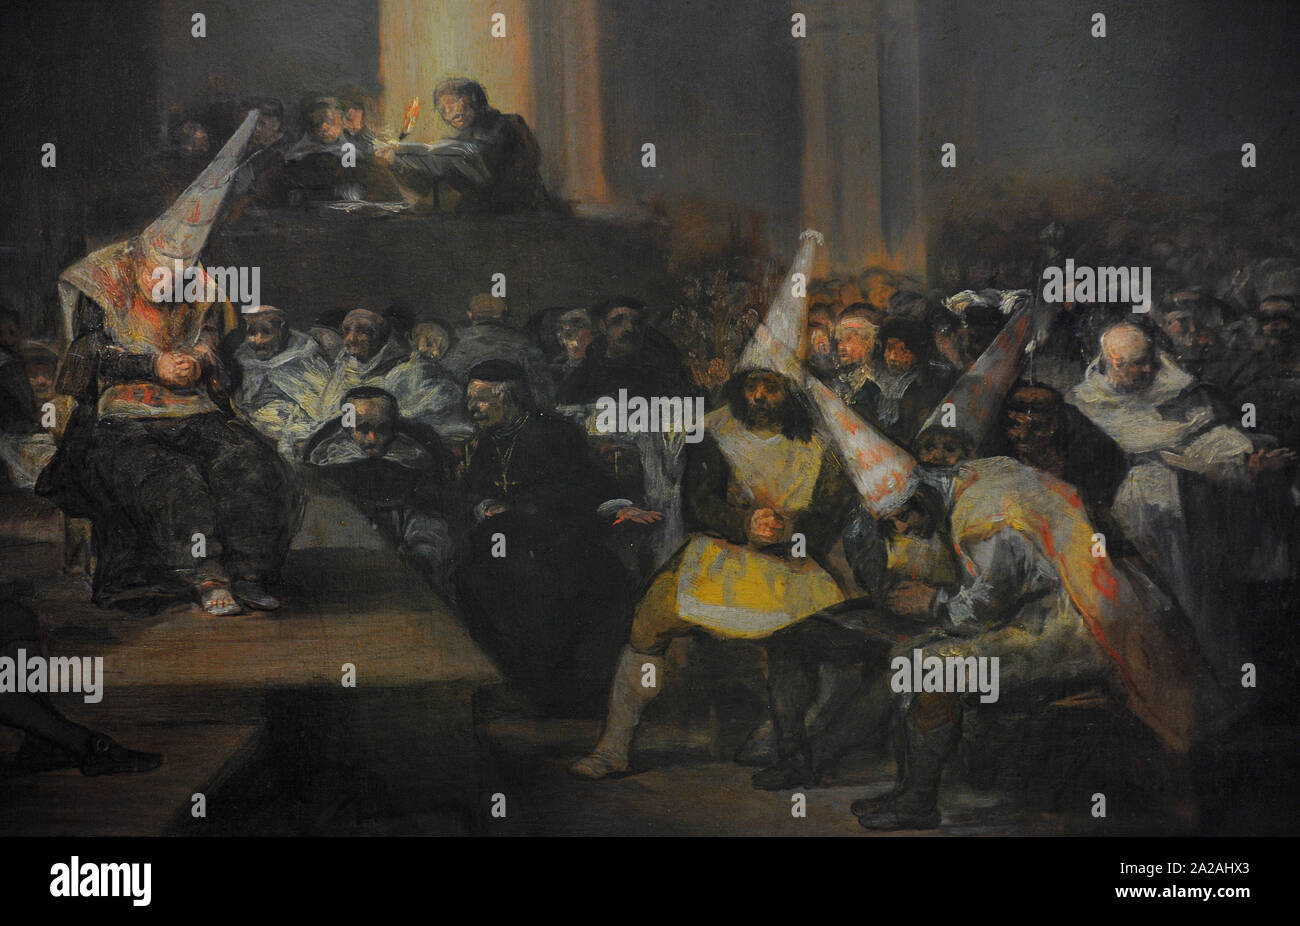 Francisco de Goya y Lucientes (1746-1828). Spanischer Maler. Die Inquisition Szene, 1808-1812. Detail. San Fernando Königliche Akademie der Schönen Künste in Madrid. Spanien. Stockfoto